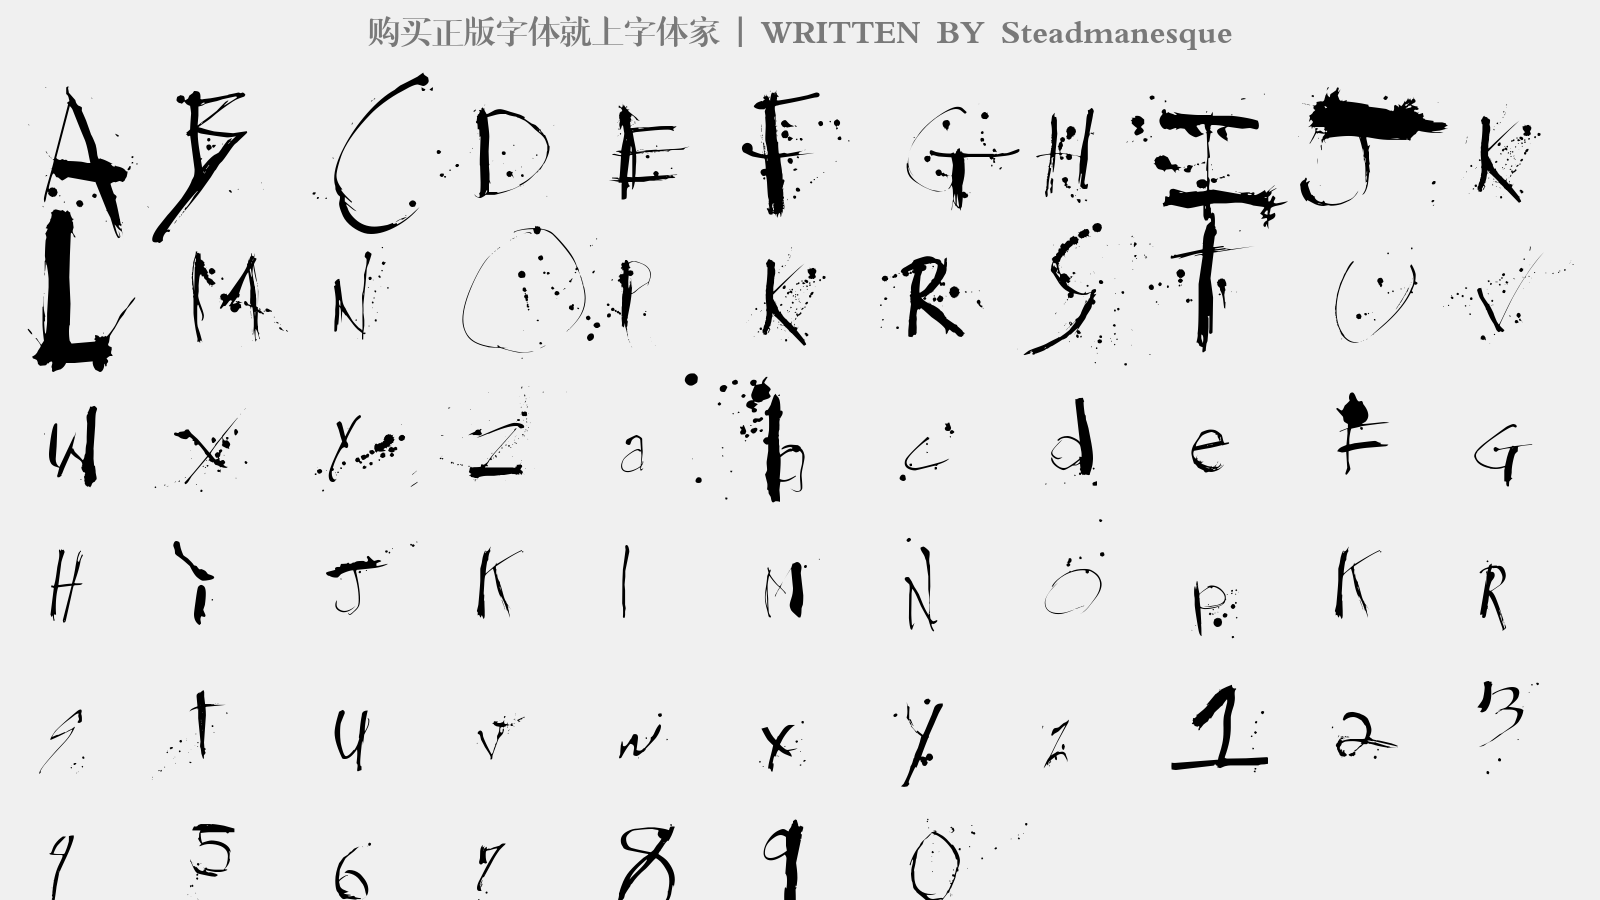 Steadmanesque - 大写字母/小写字母/数字